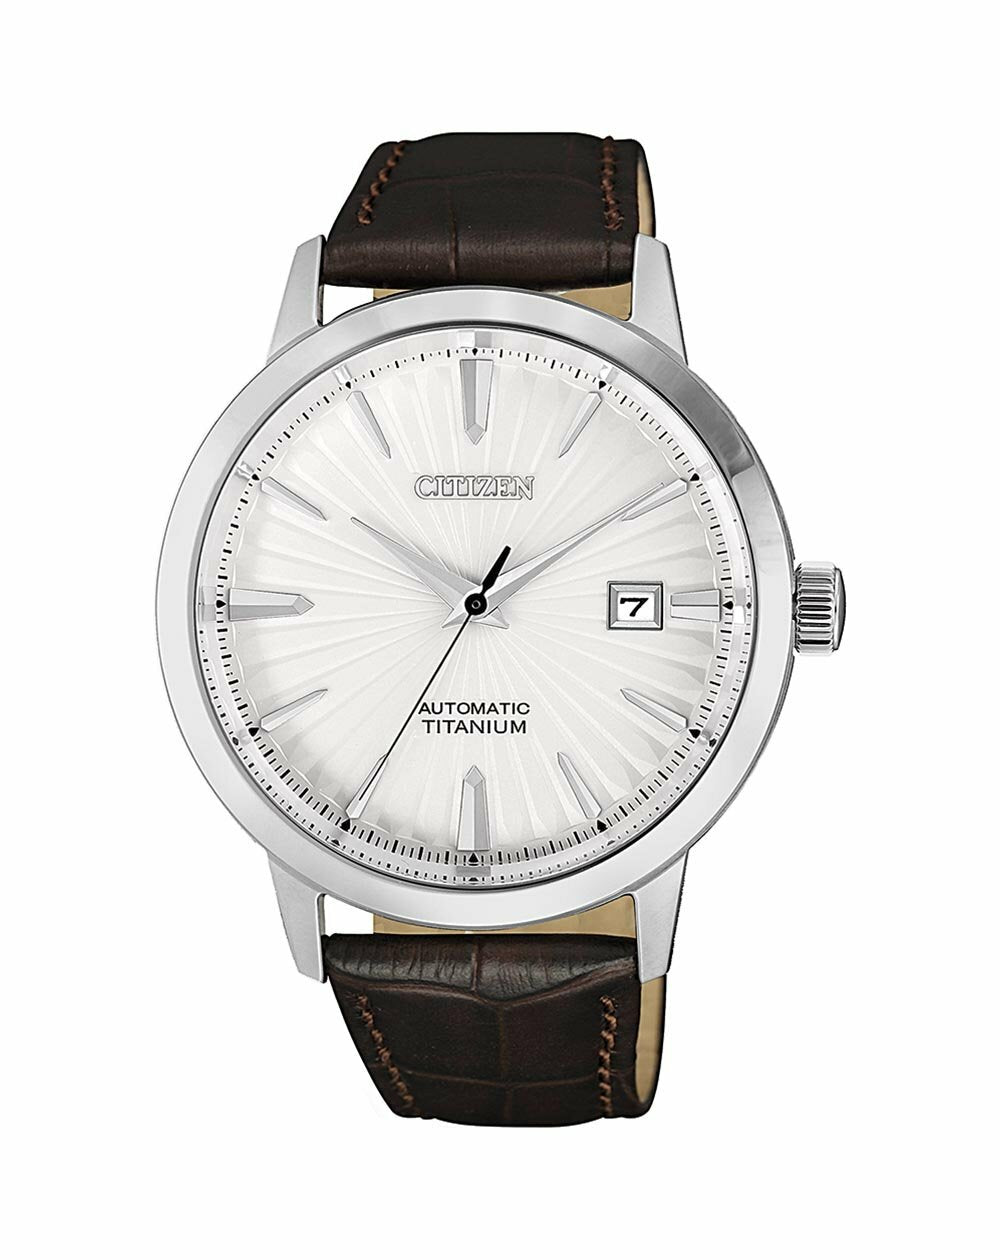 Citizen Titanium Automatic Brown Leather Watch NJ2180-11A – Watch Direct  Australia